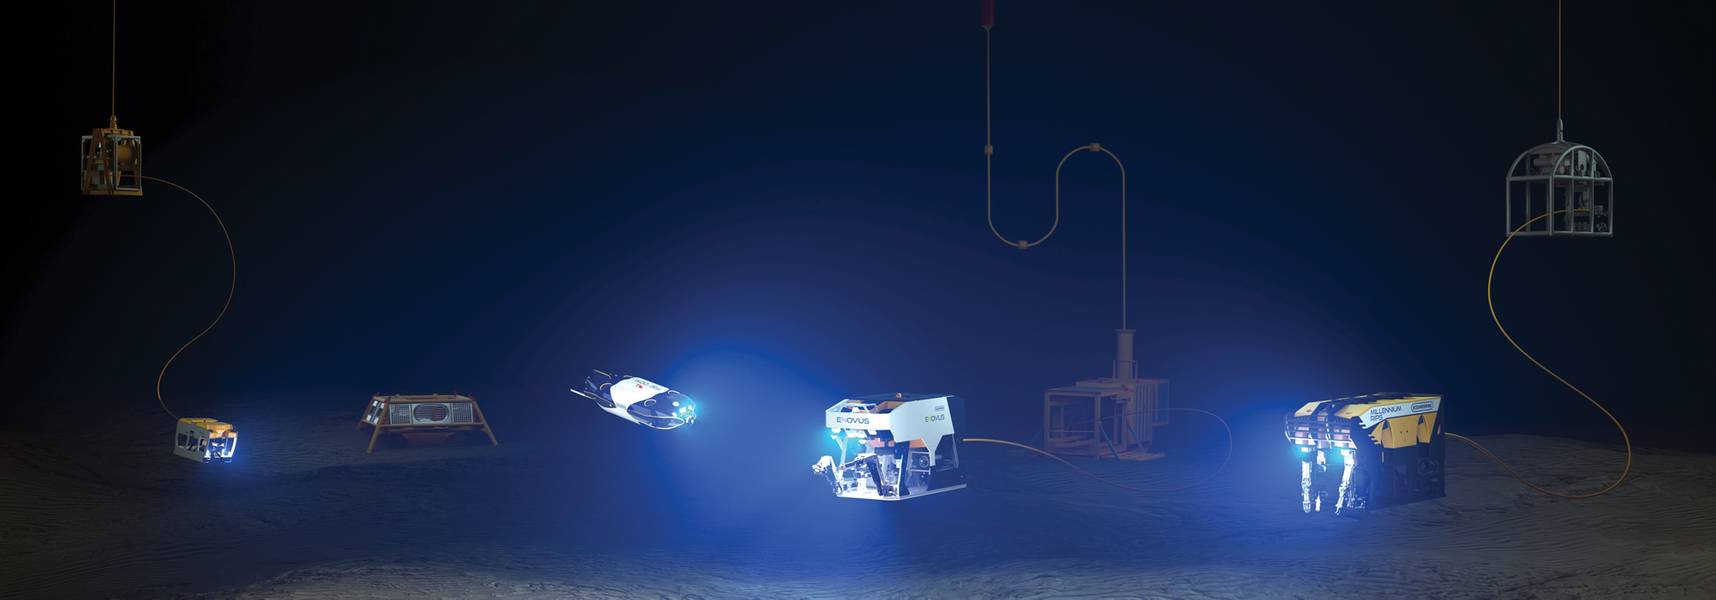 تم تضمين تشكيلة Oceaneering's ROV مع الجيل التالي من سيارات Freedom و E-ROV. بإذن من Oceaneering الدولية